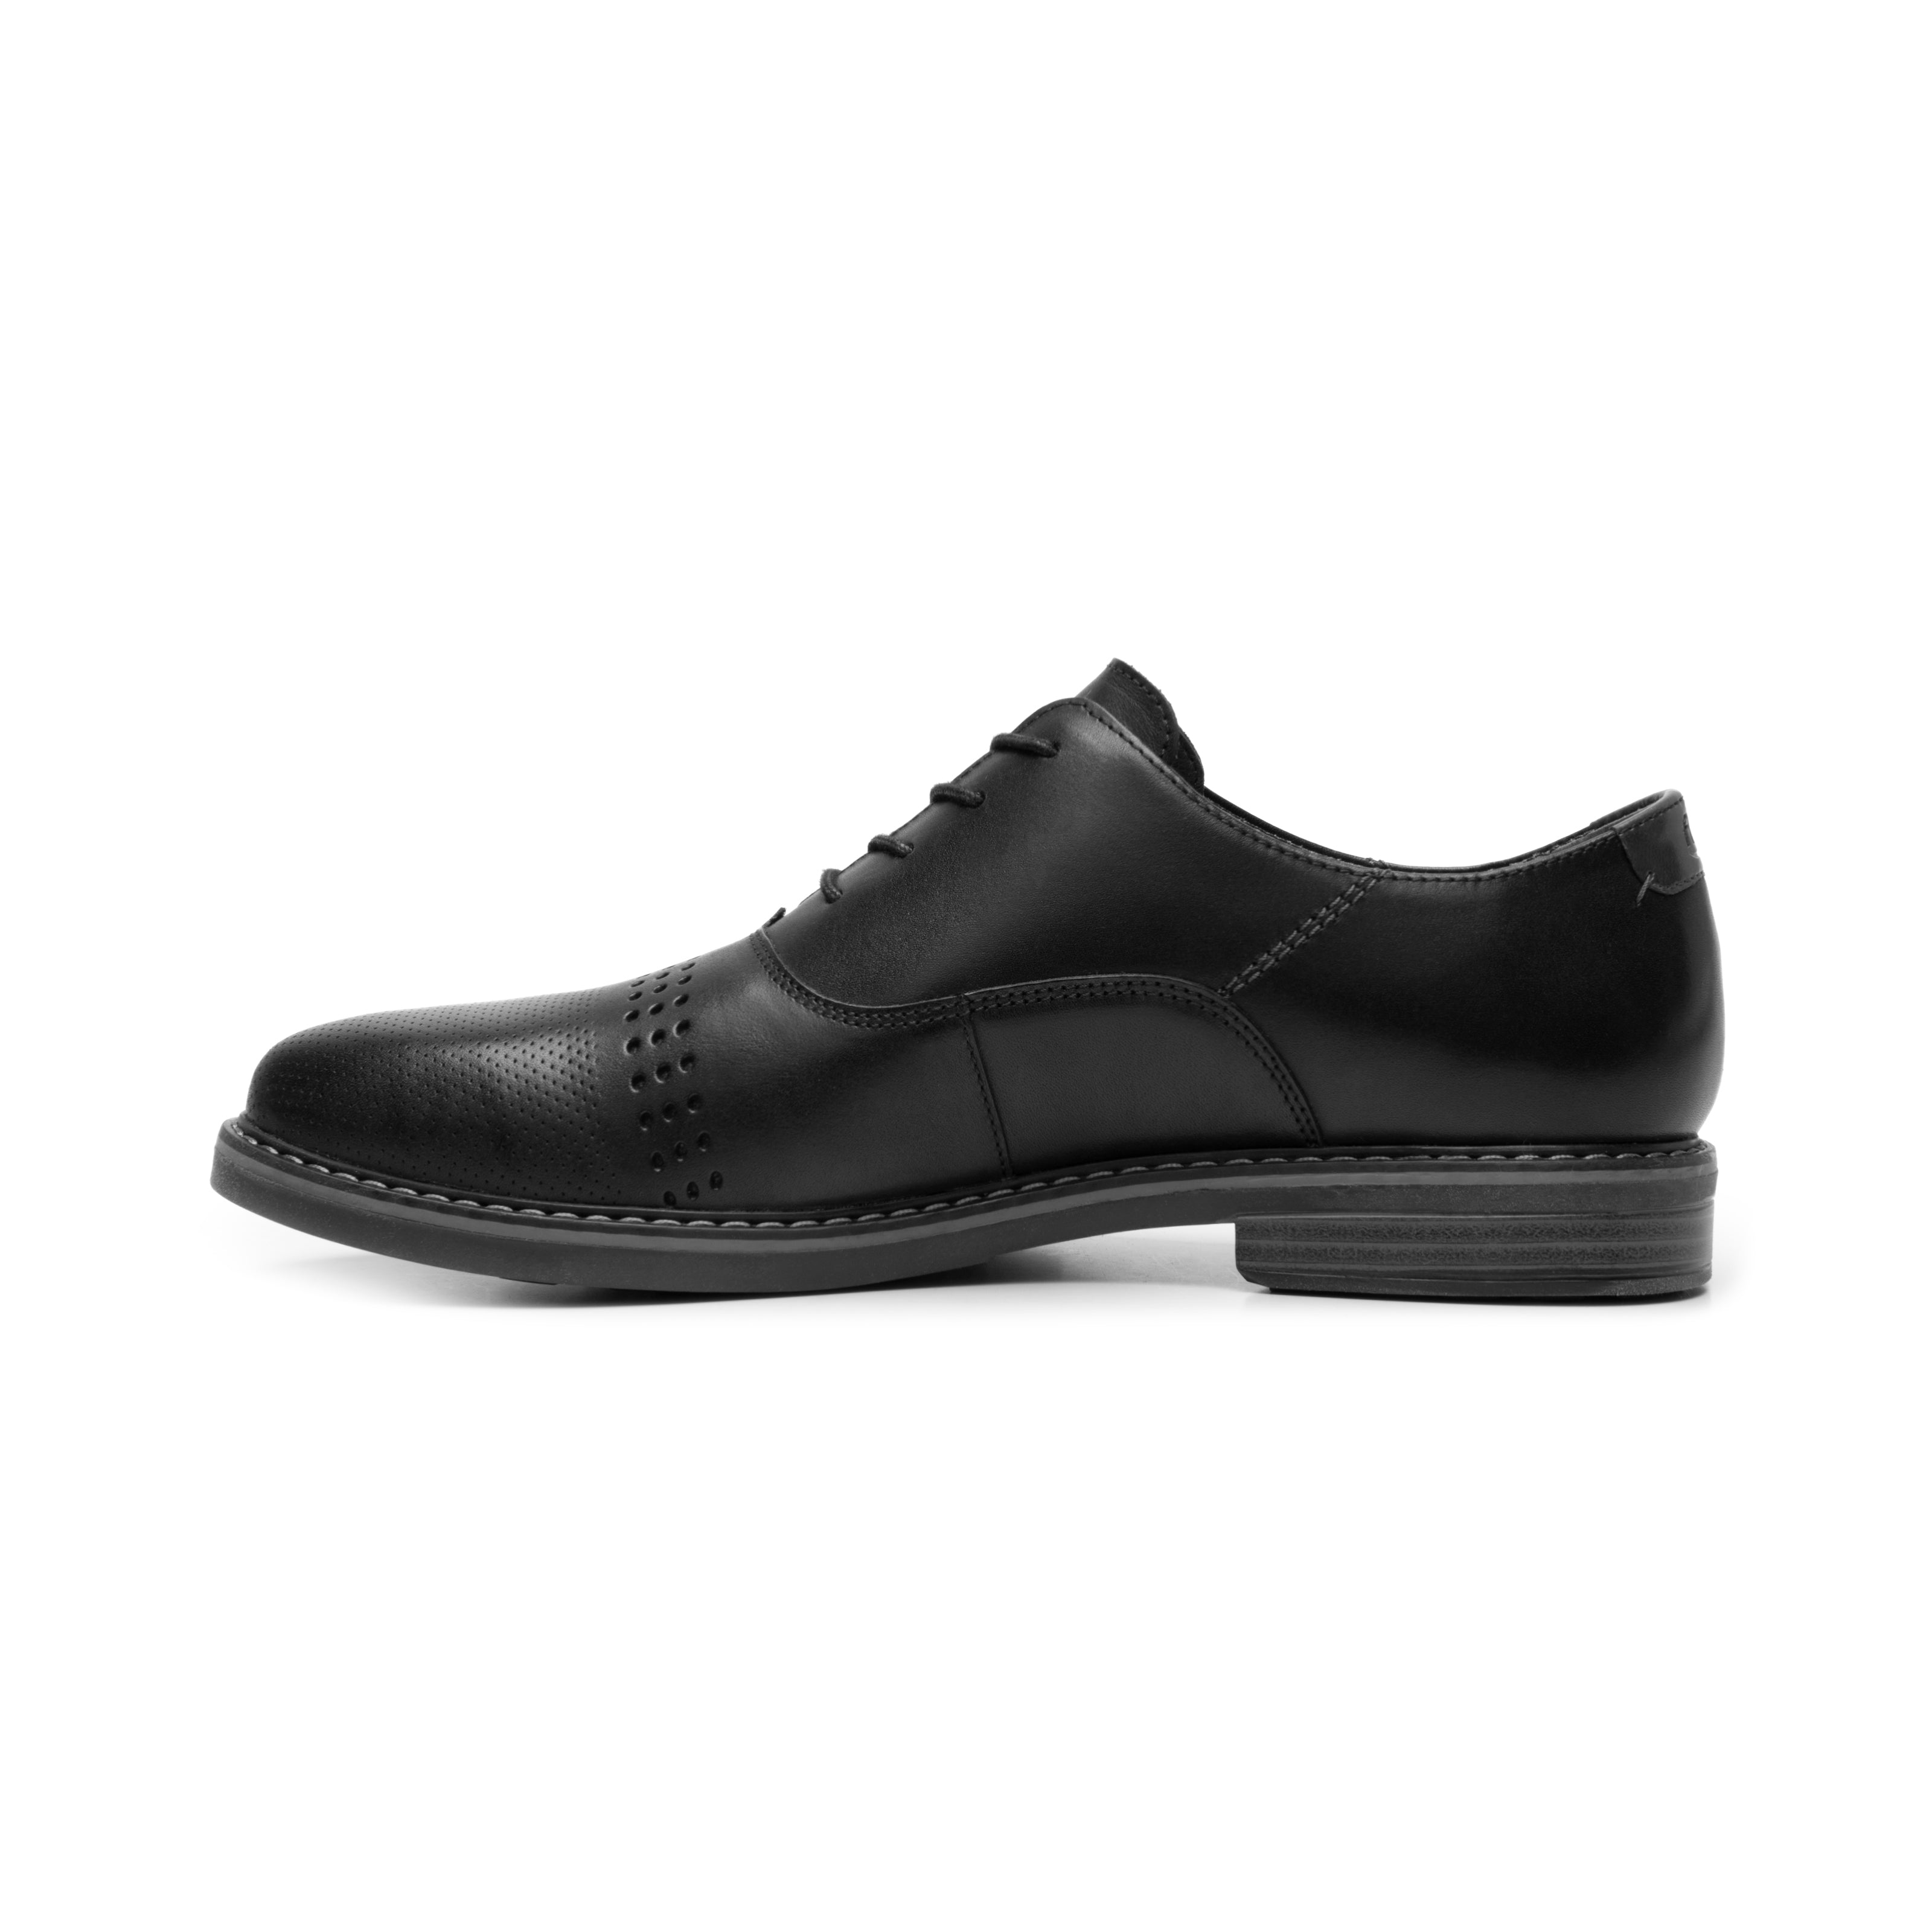 Zapatos para hombre: formales y casuales